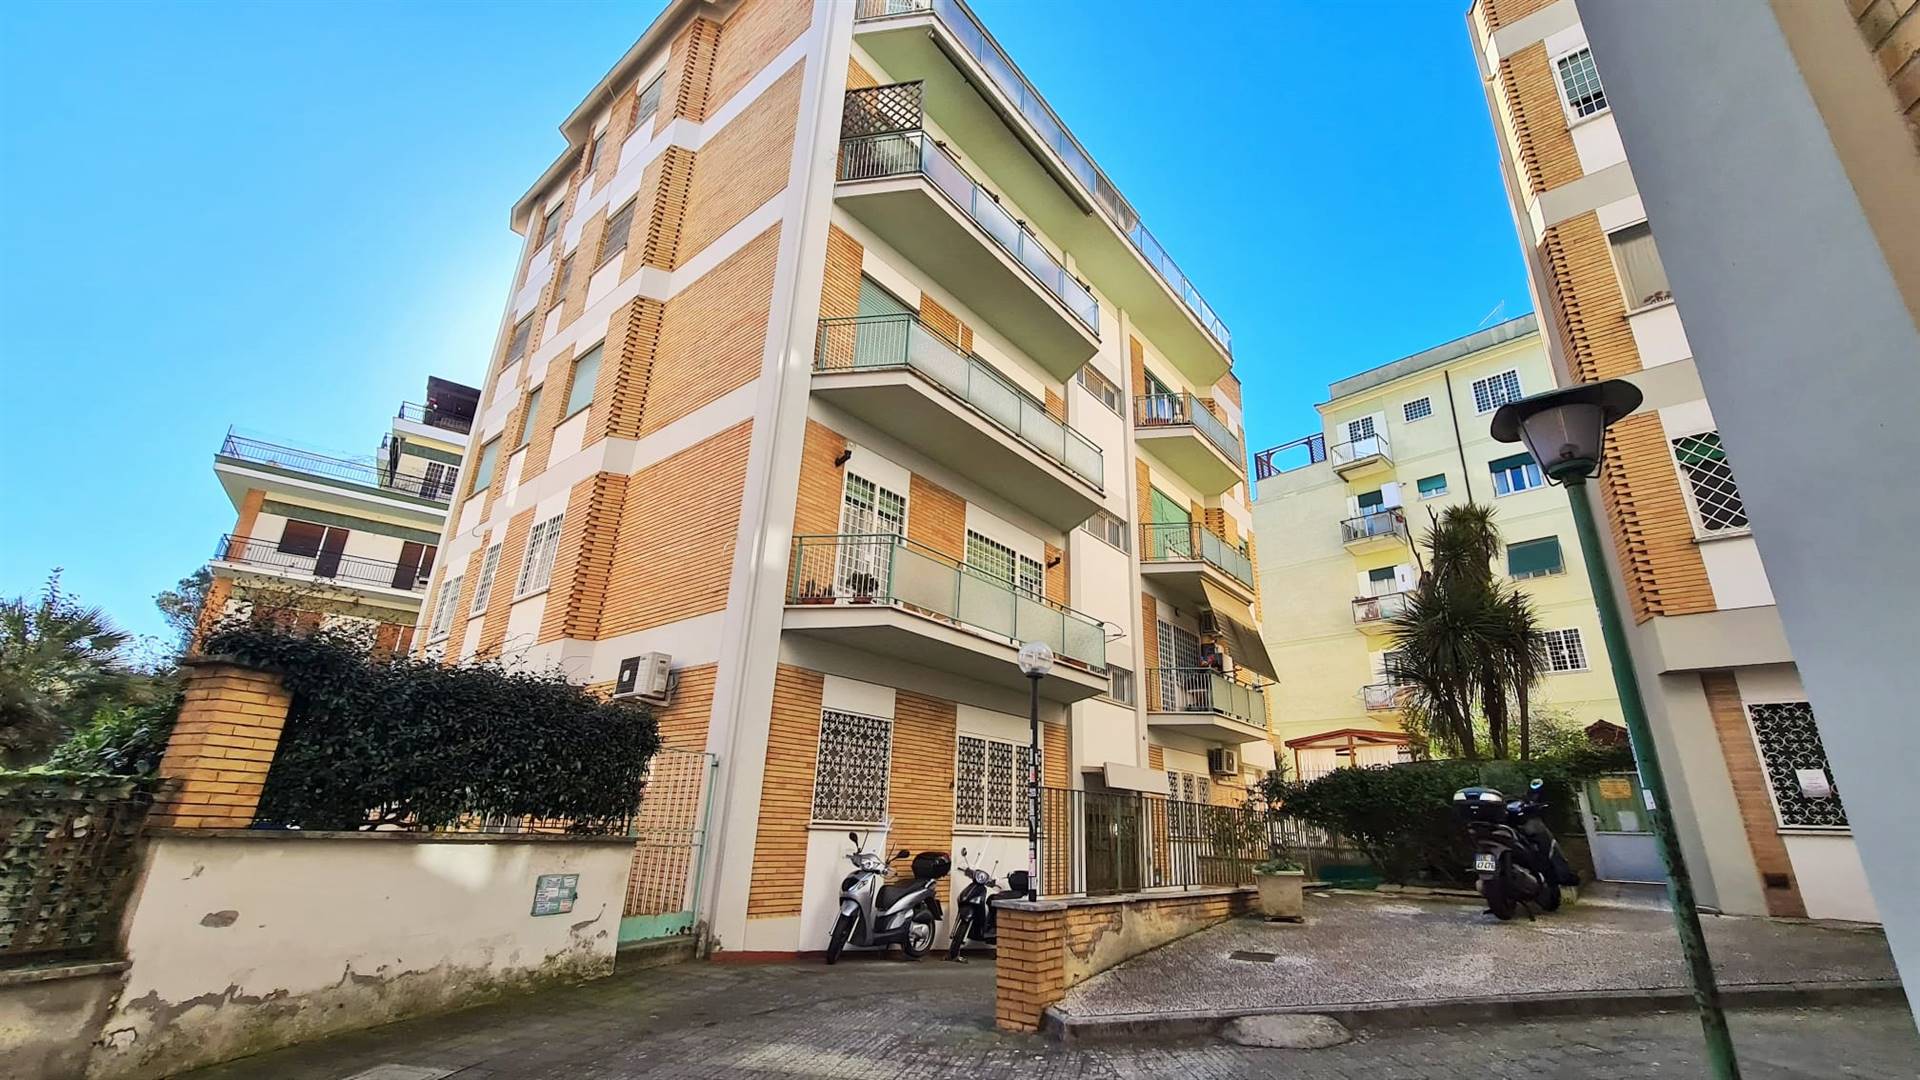 Appartamento in vendita a Roma, 2 locali, zona Zona: 42 . Cassia - Olgiata, Trattative riservate | CambioCasa.it